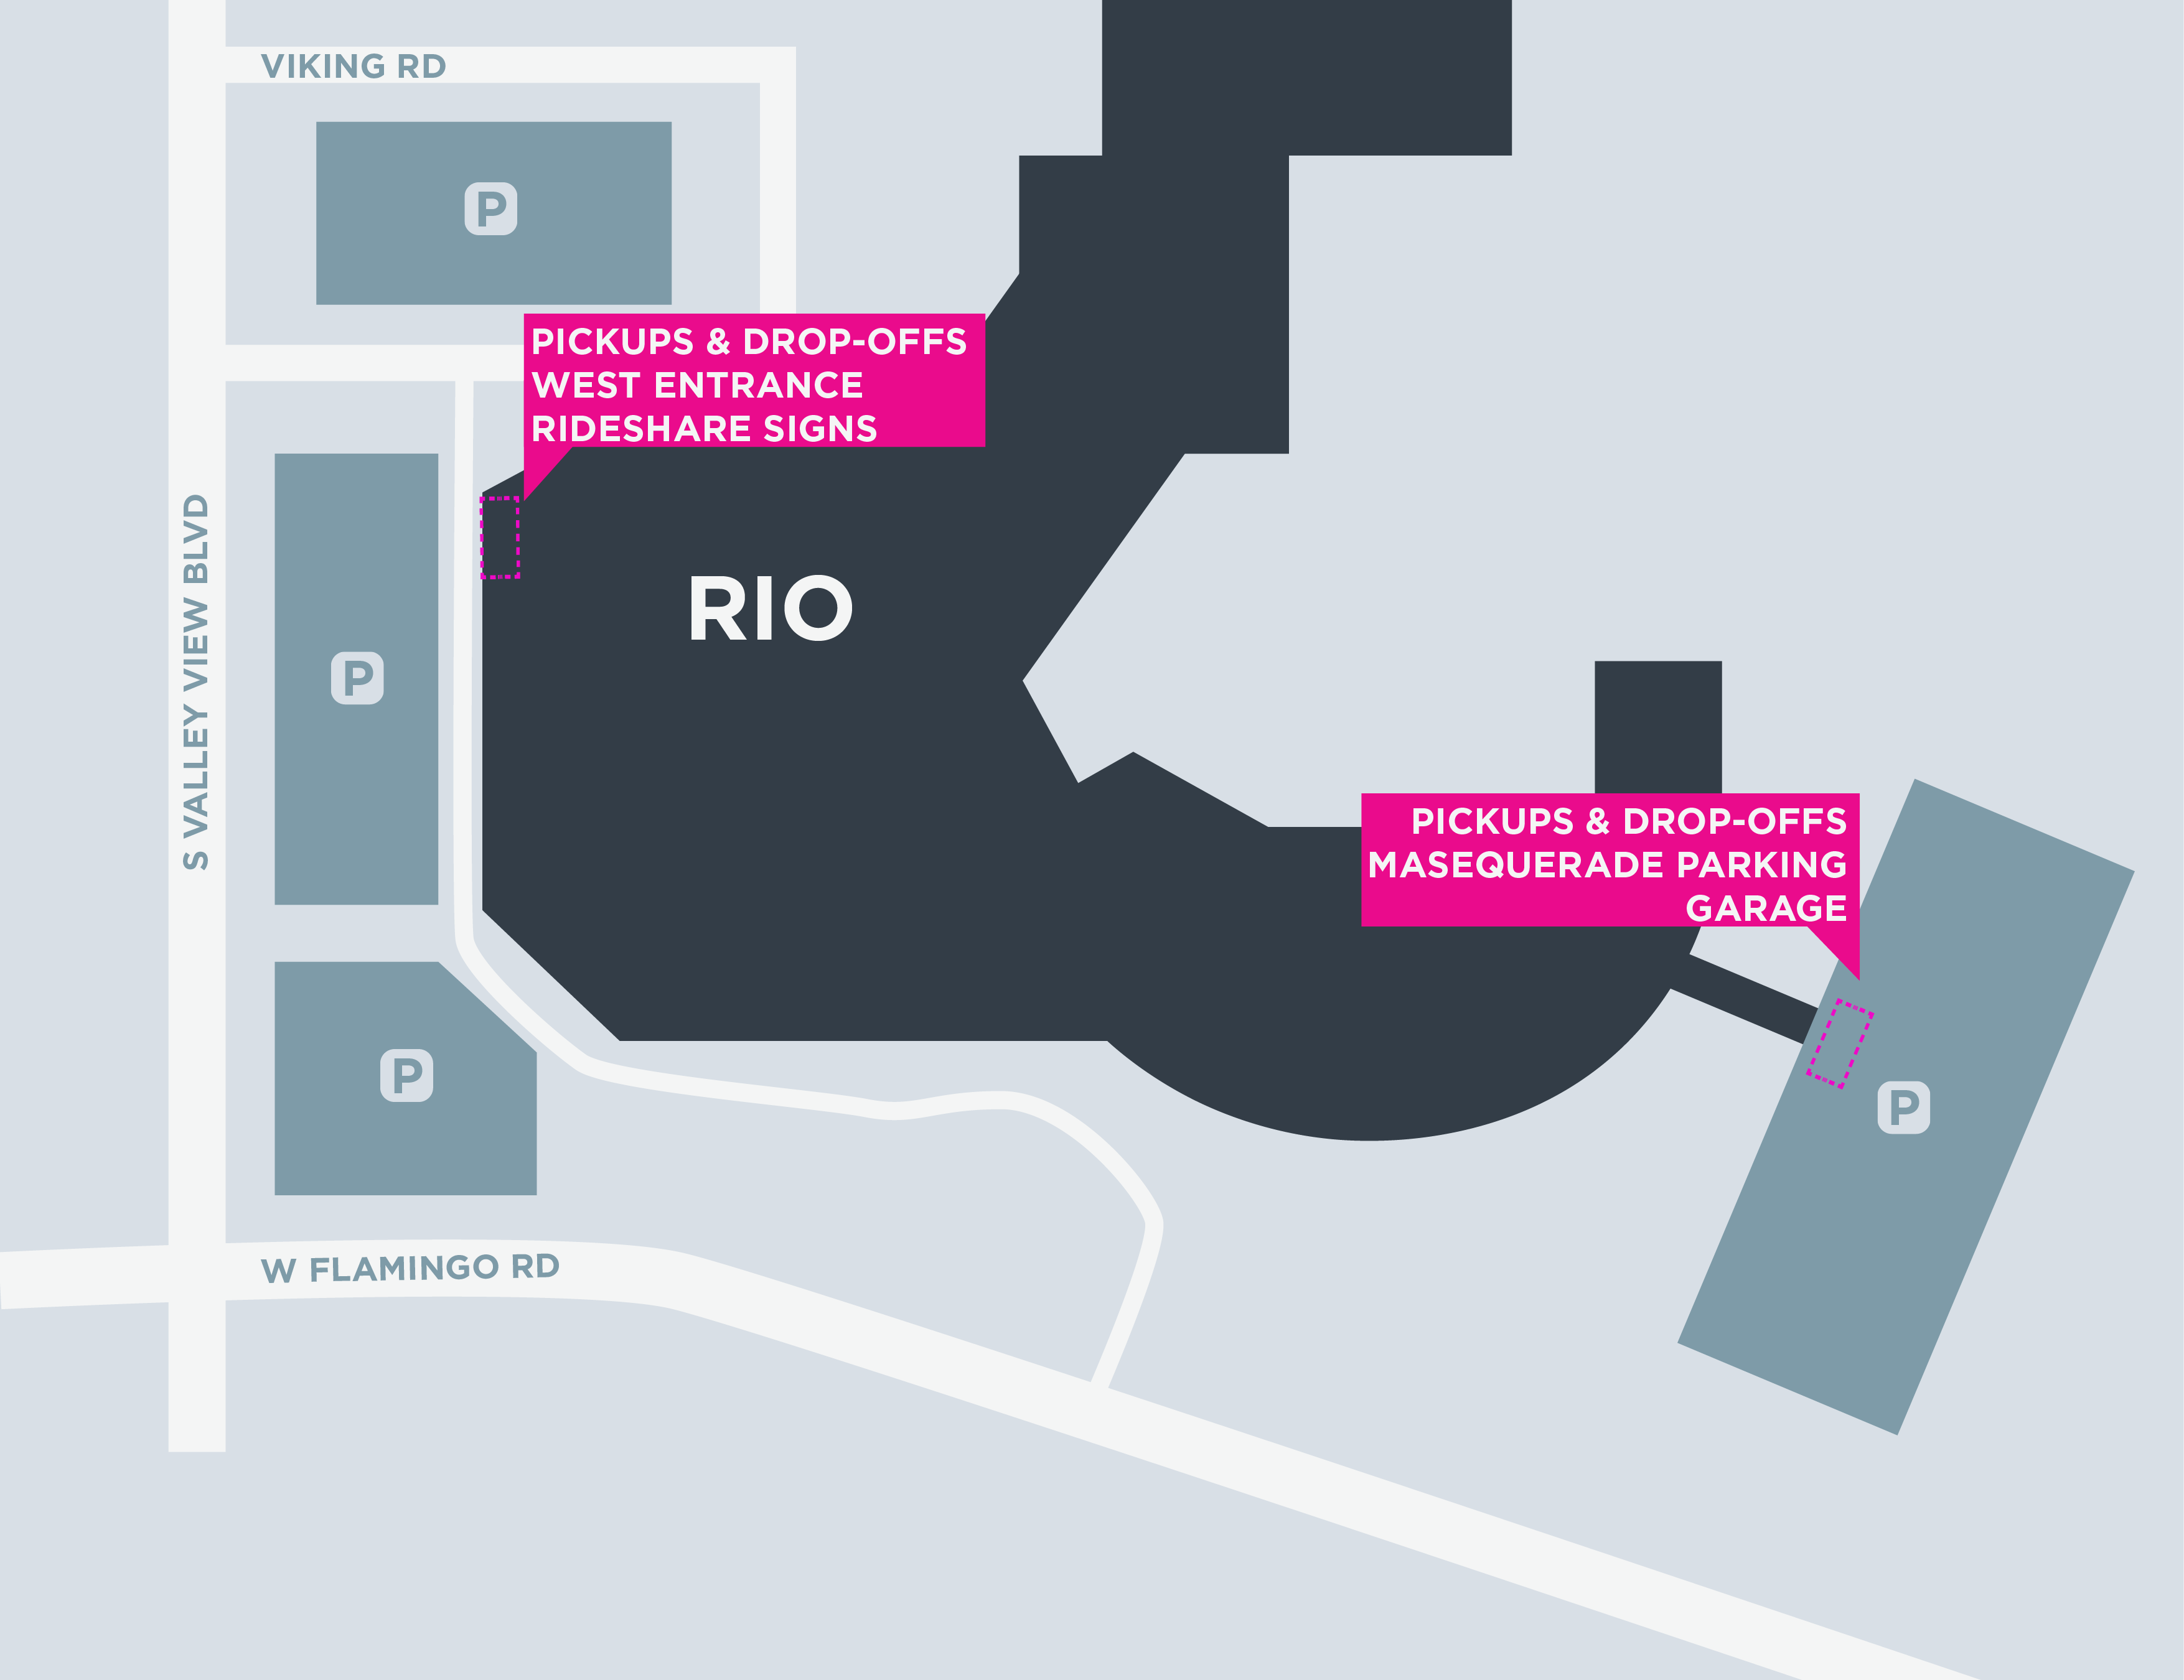 Mapa de las áreas para recoger y dejar pasajeros en Rio Hotel en Las Vegas.